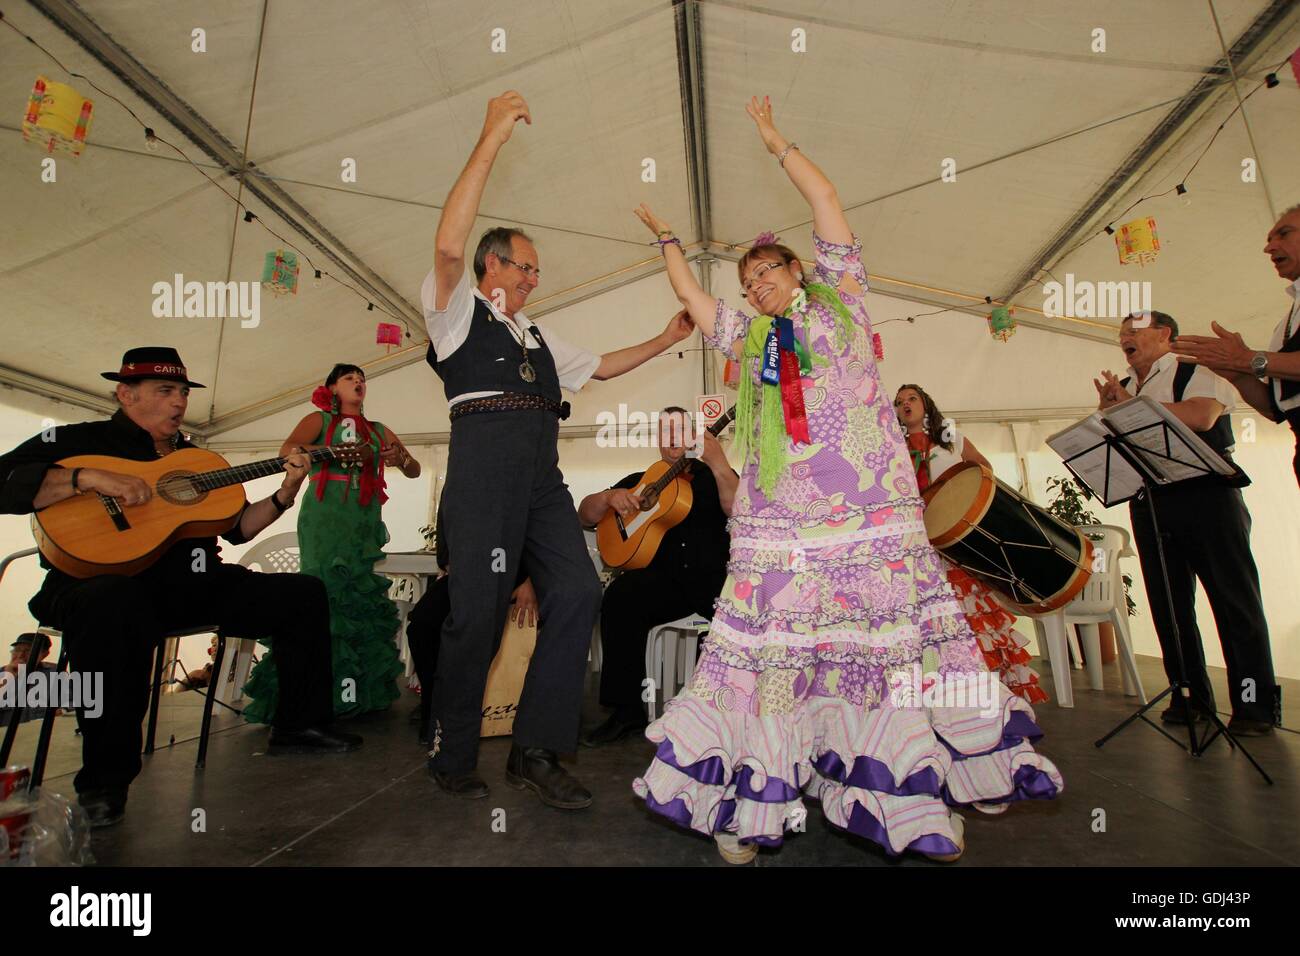 4 mai 2014. La Murta Fiesta, Bellavista, Murcia, Espagne. Le festival bat son plein avec de la musique et de la danse Banque D'Images